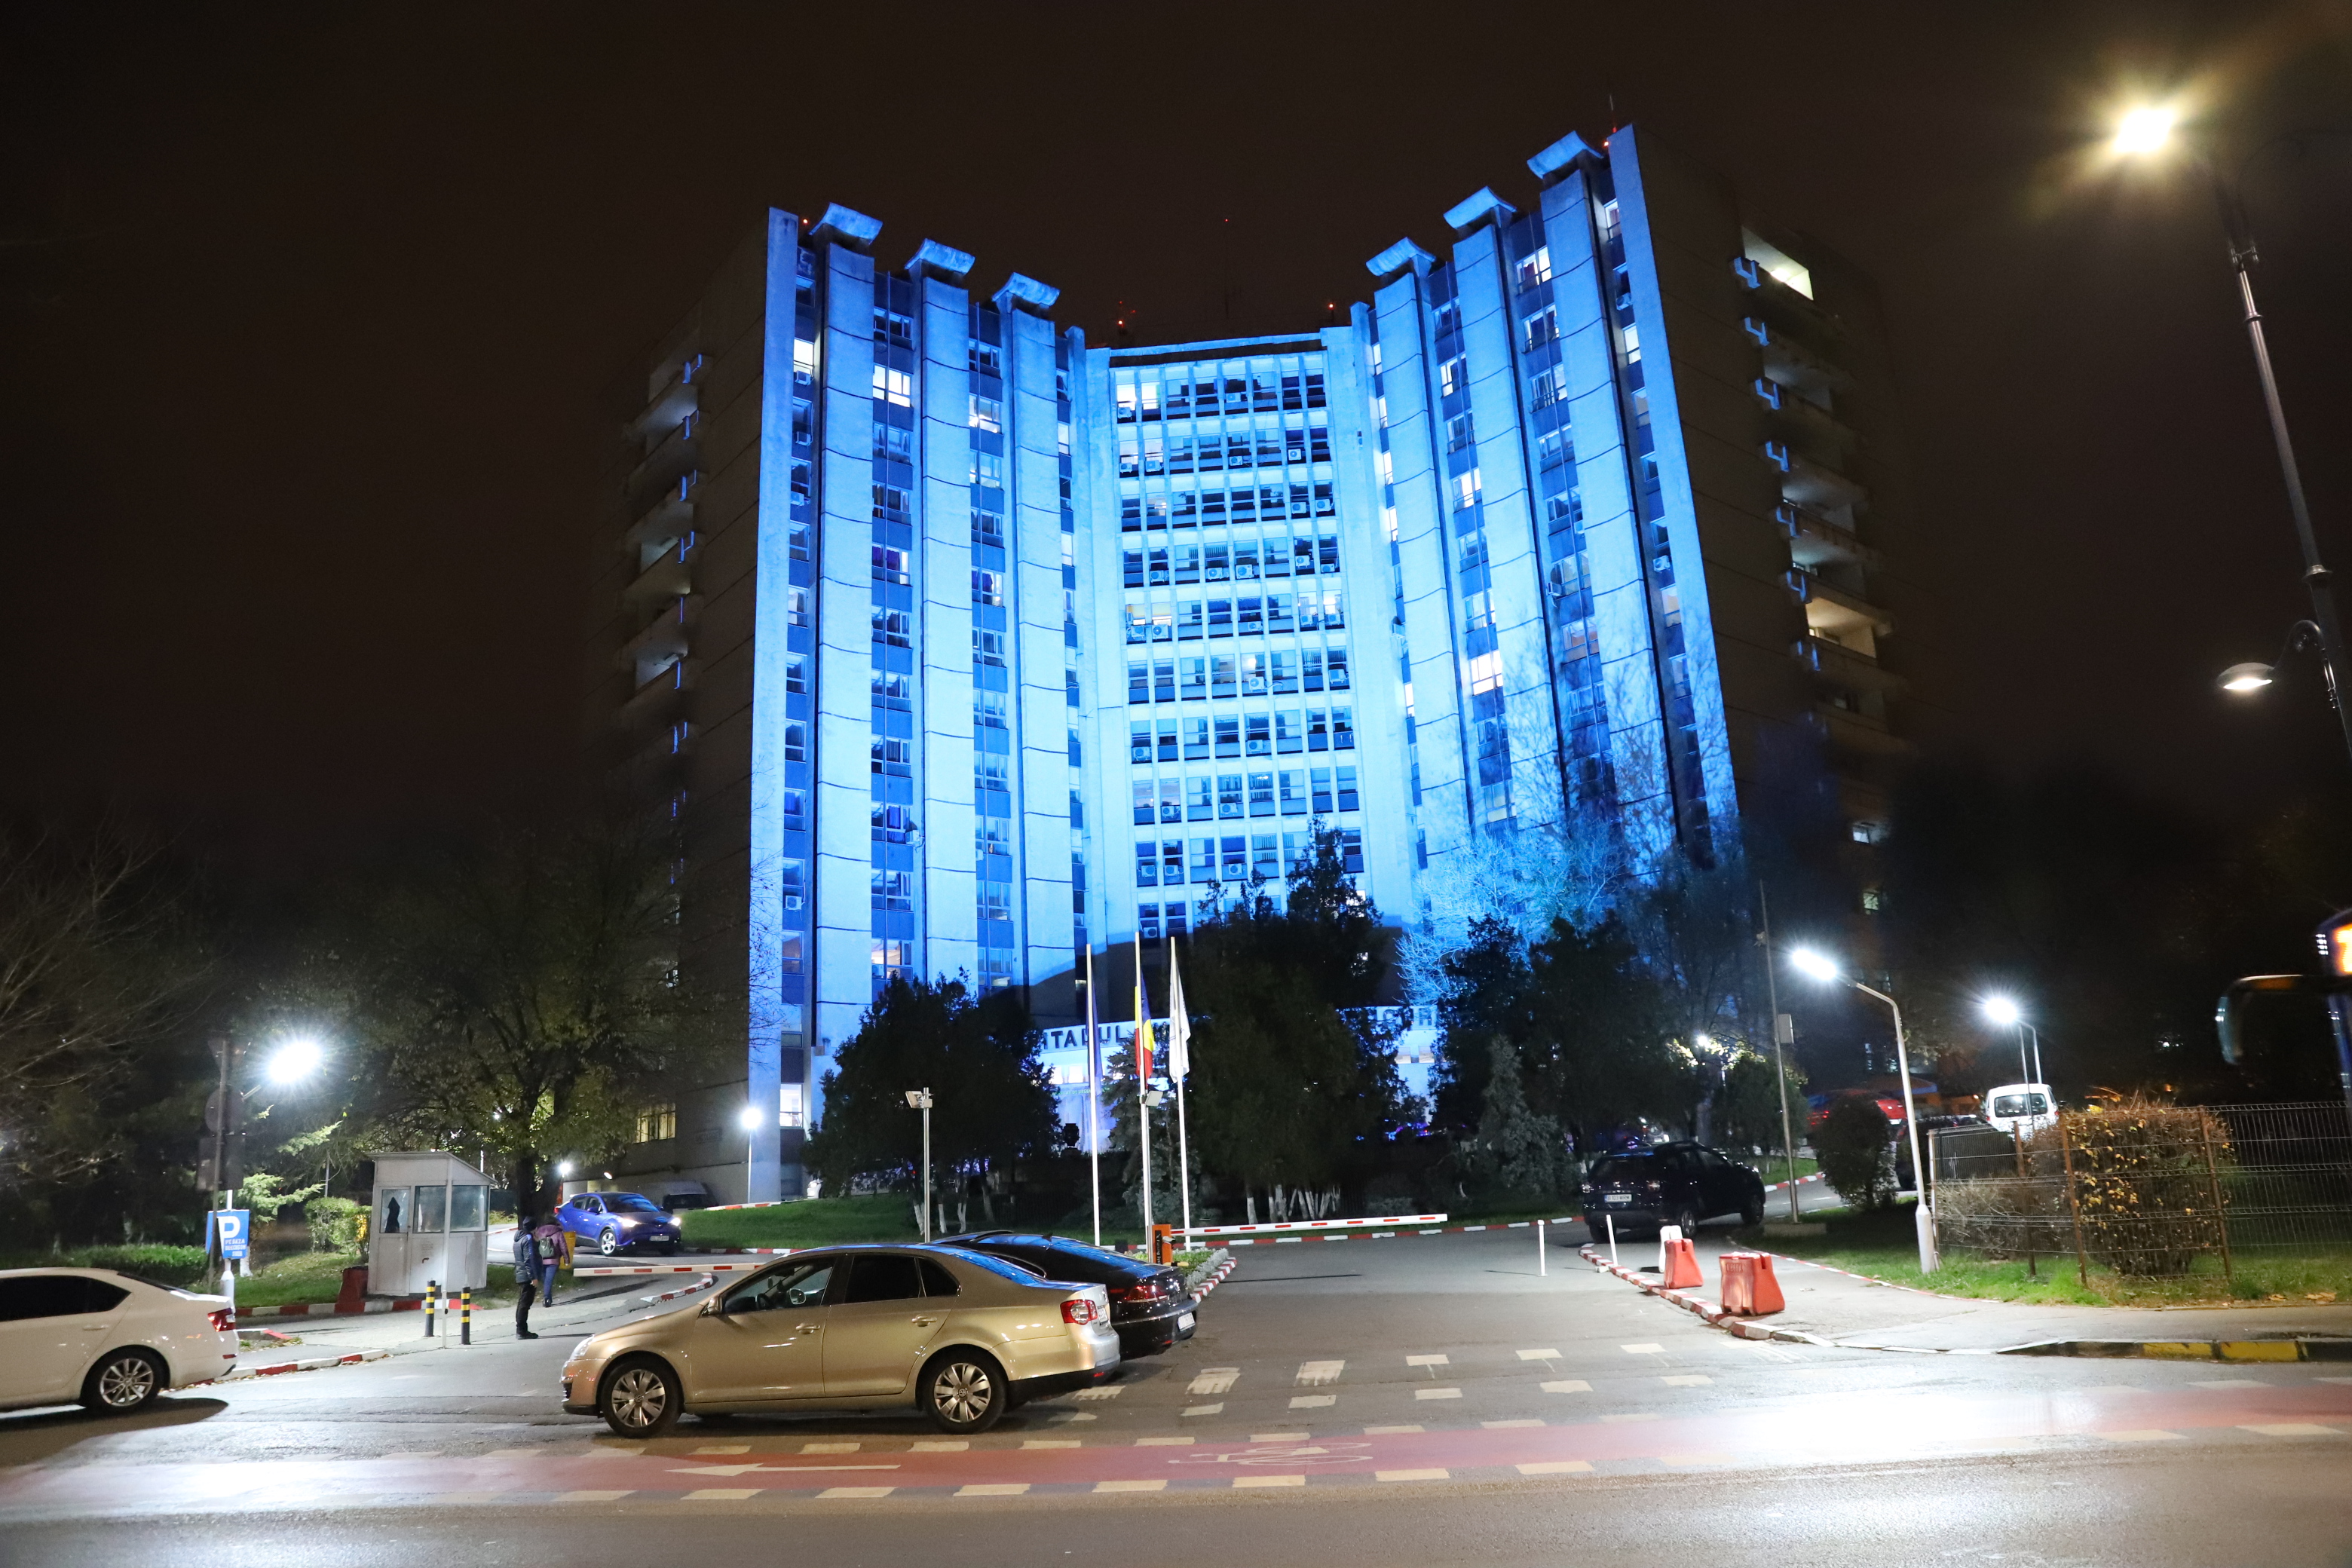 Spitalul Univ. de Urgenta Bucuresti